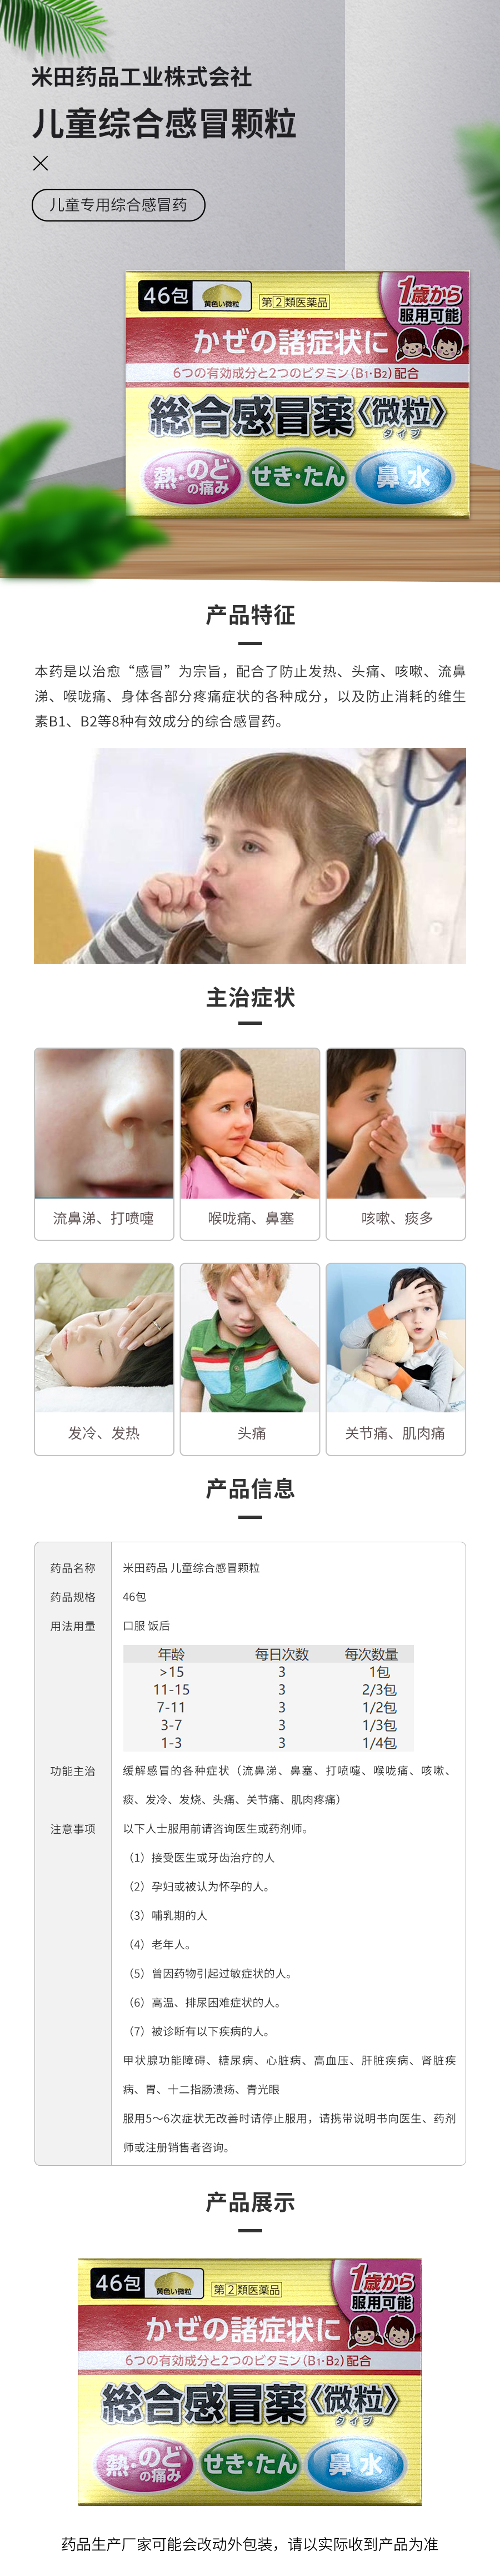 米田药品儿童综合感冒颗粒46包 香港木子国际药品信息网 香港木子国际药品信息网